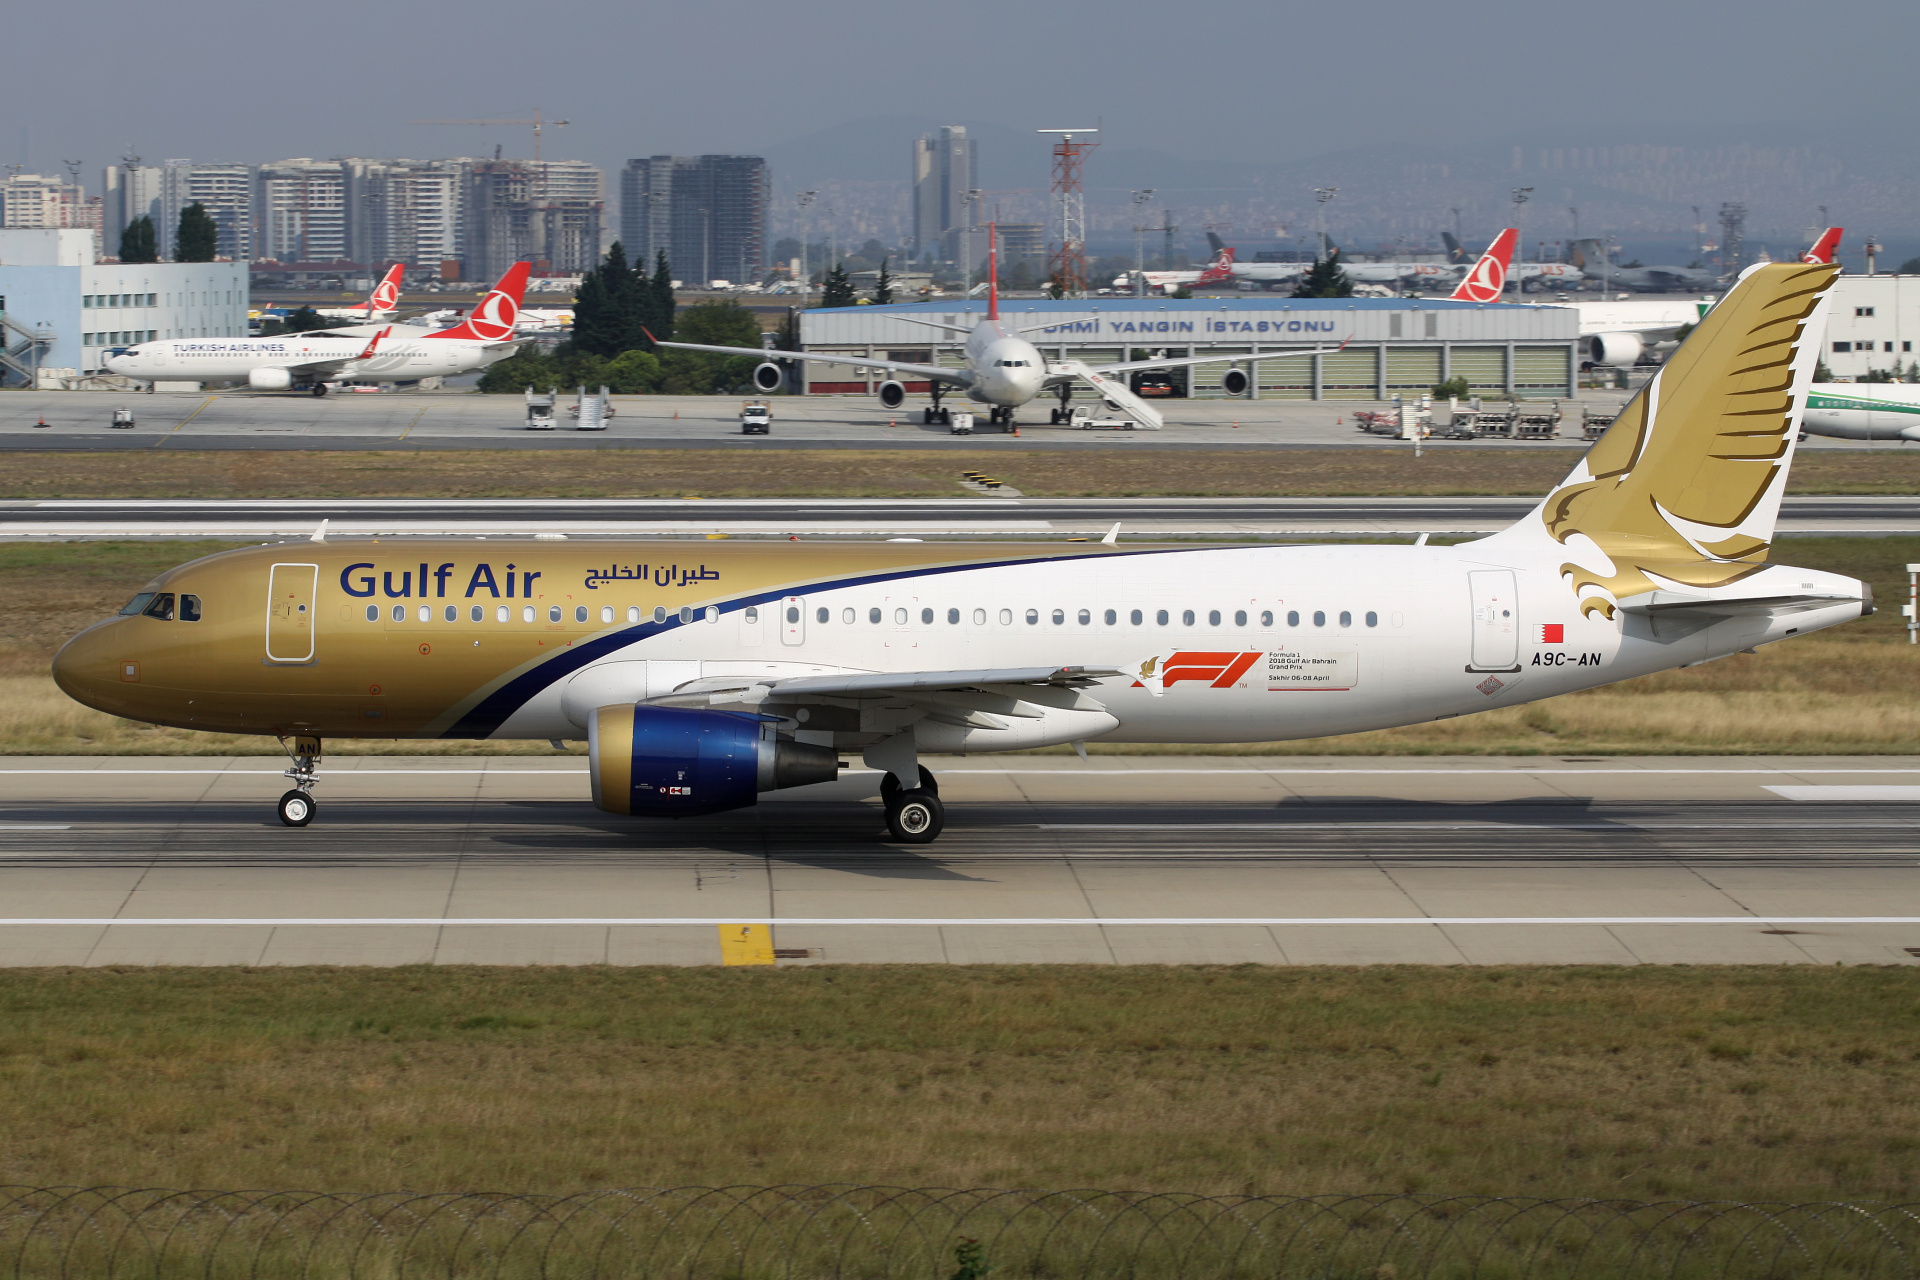 A9C-AN, Gulf Air (Samoloty » Port Lotniczy im. Atatürka w Stambule » Airbus A320-200)